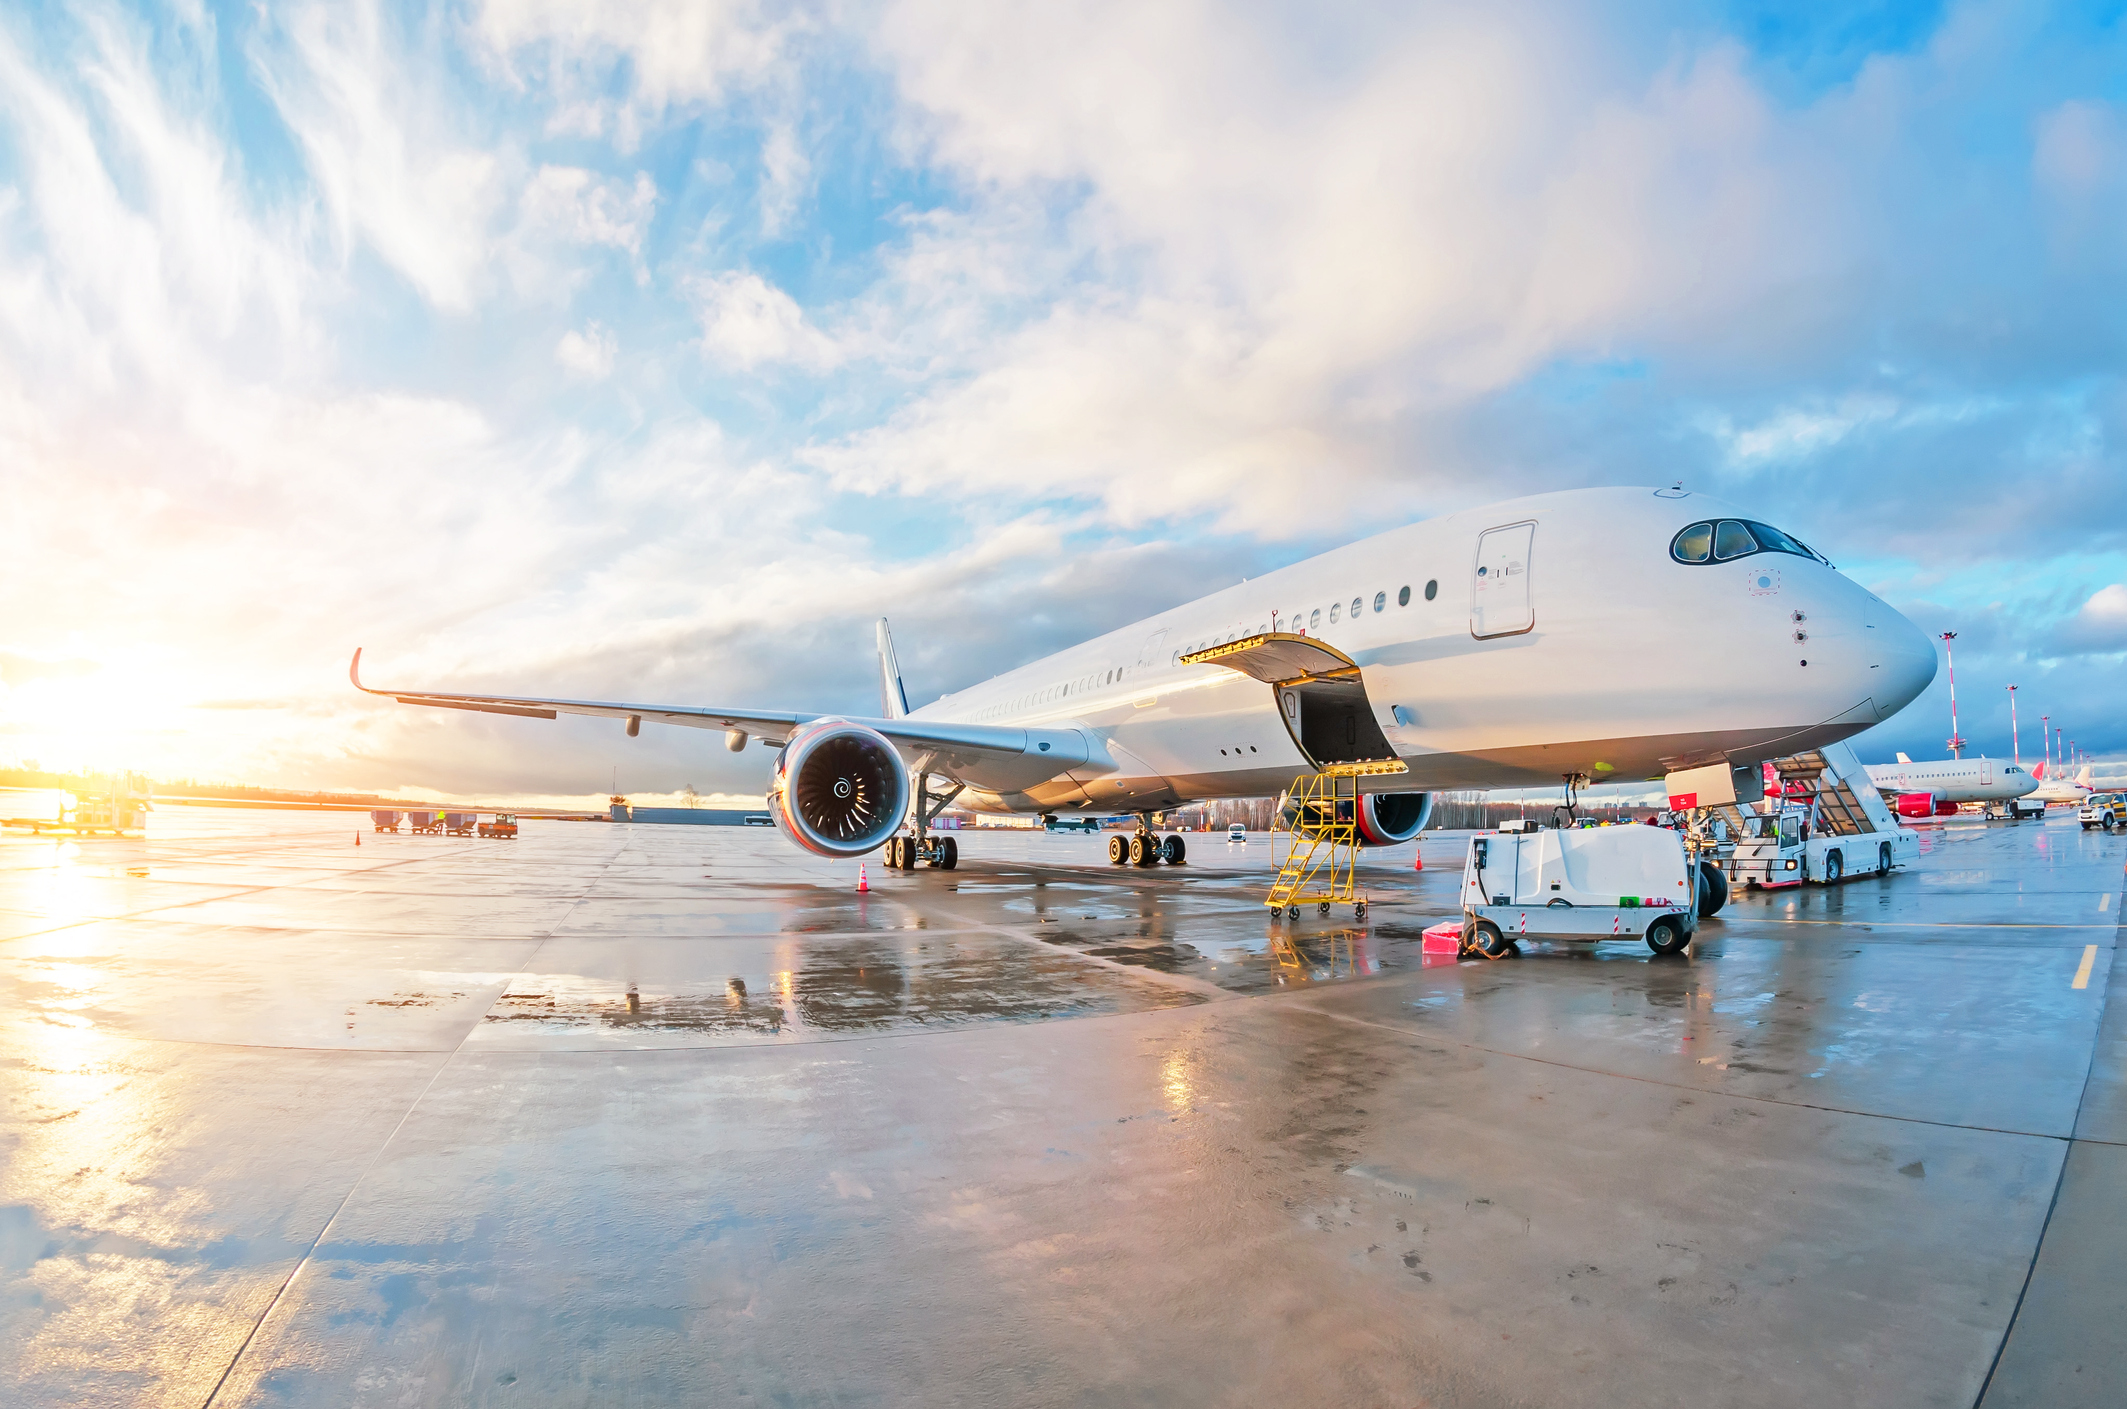 Onderhoudswerkzaamheden aan een geparkeerd passagiersvliegtuig op natte grond op de luchthaven bij zonsondergang